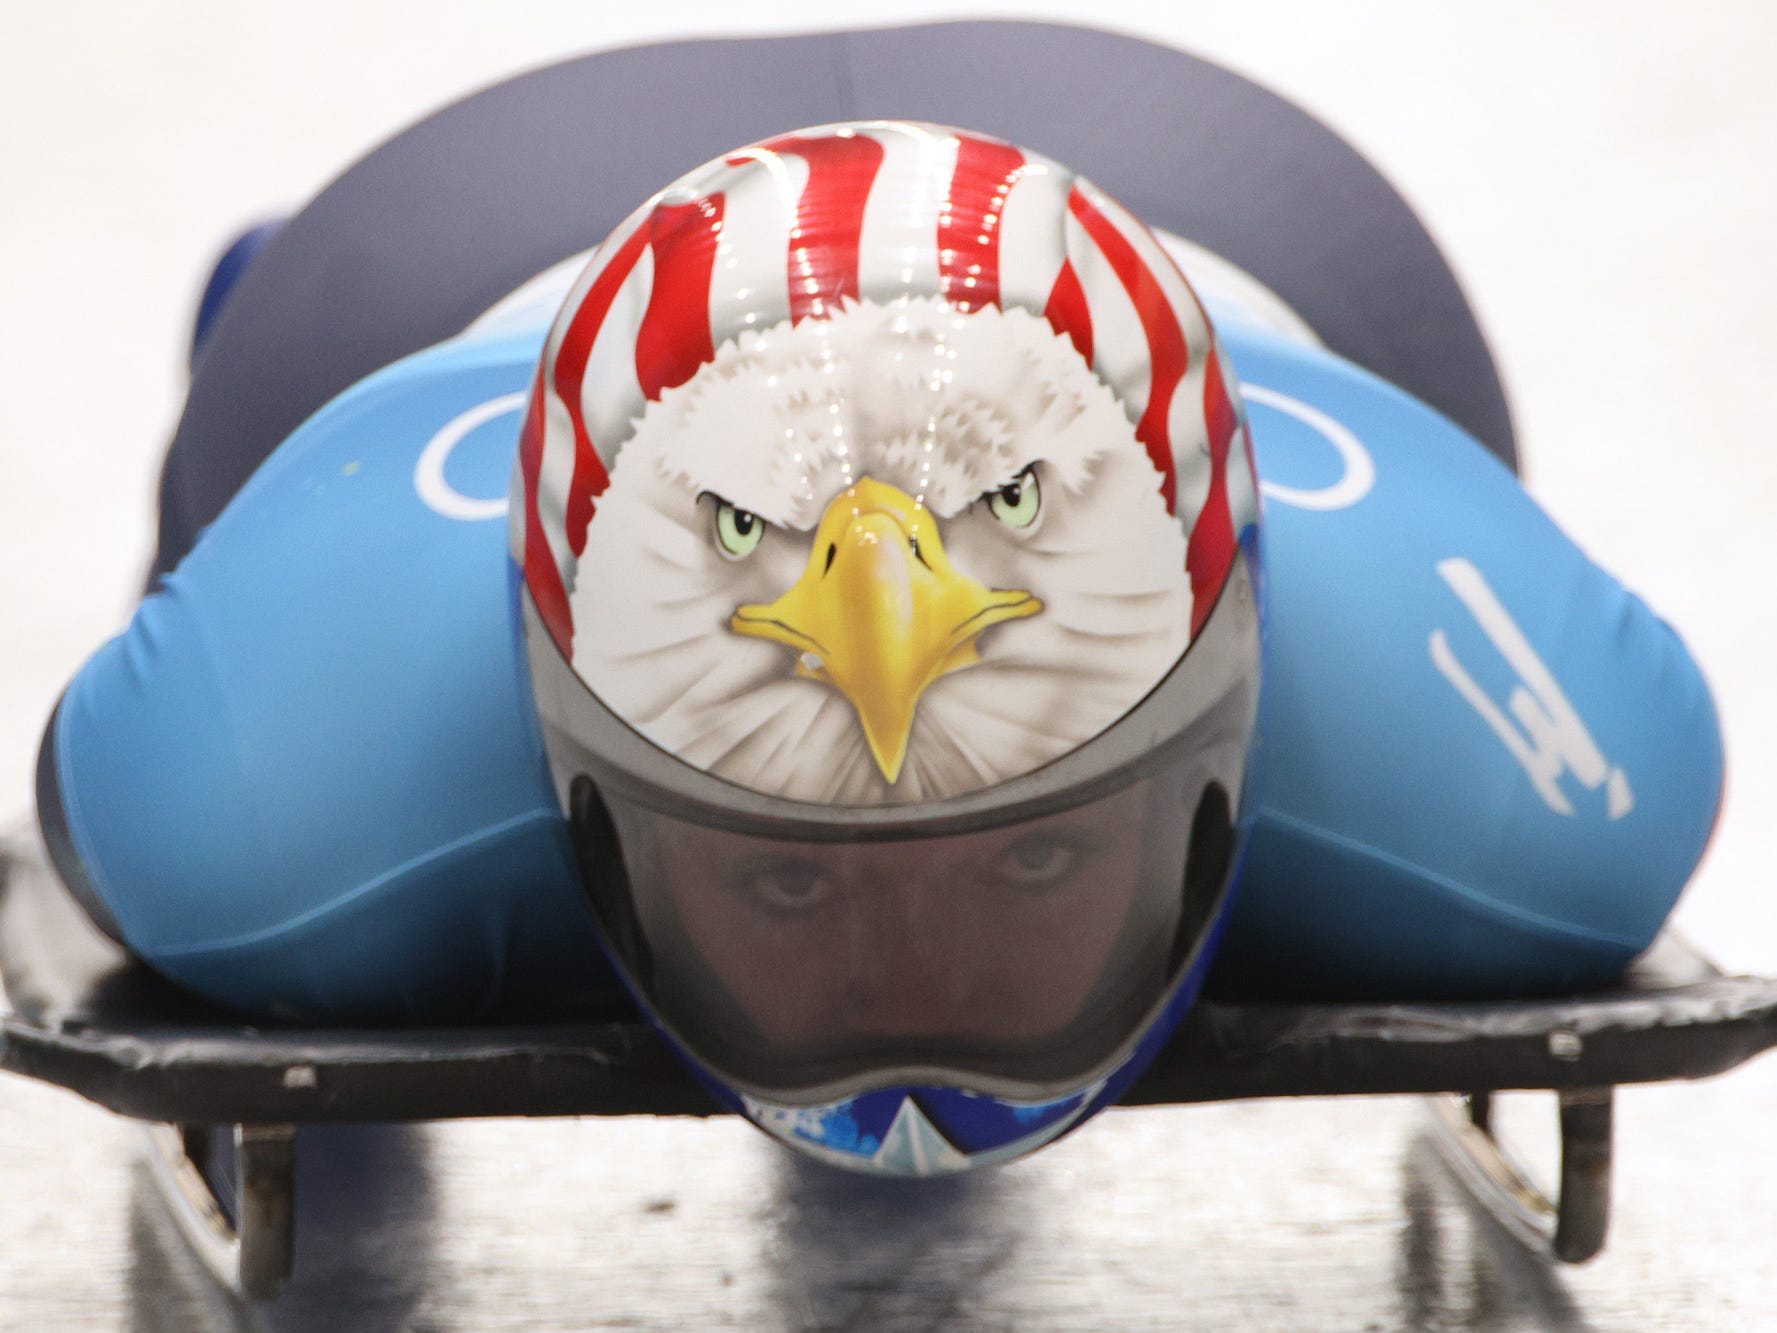 Ein Skeleton-Rennfahrer bei den Olympischen Spielen trägt einen Helm mit Adler.